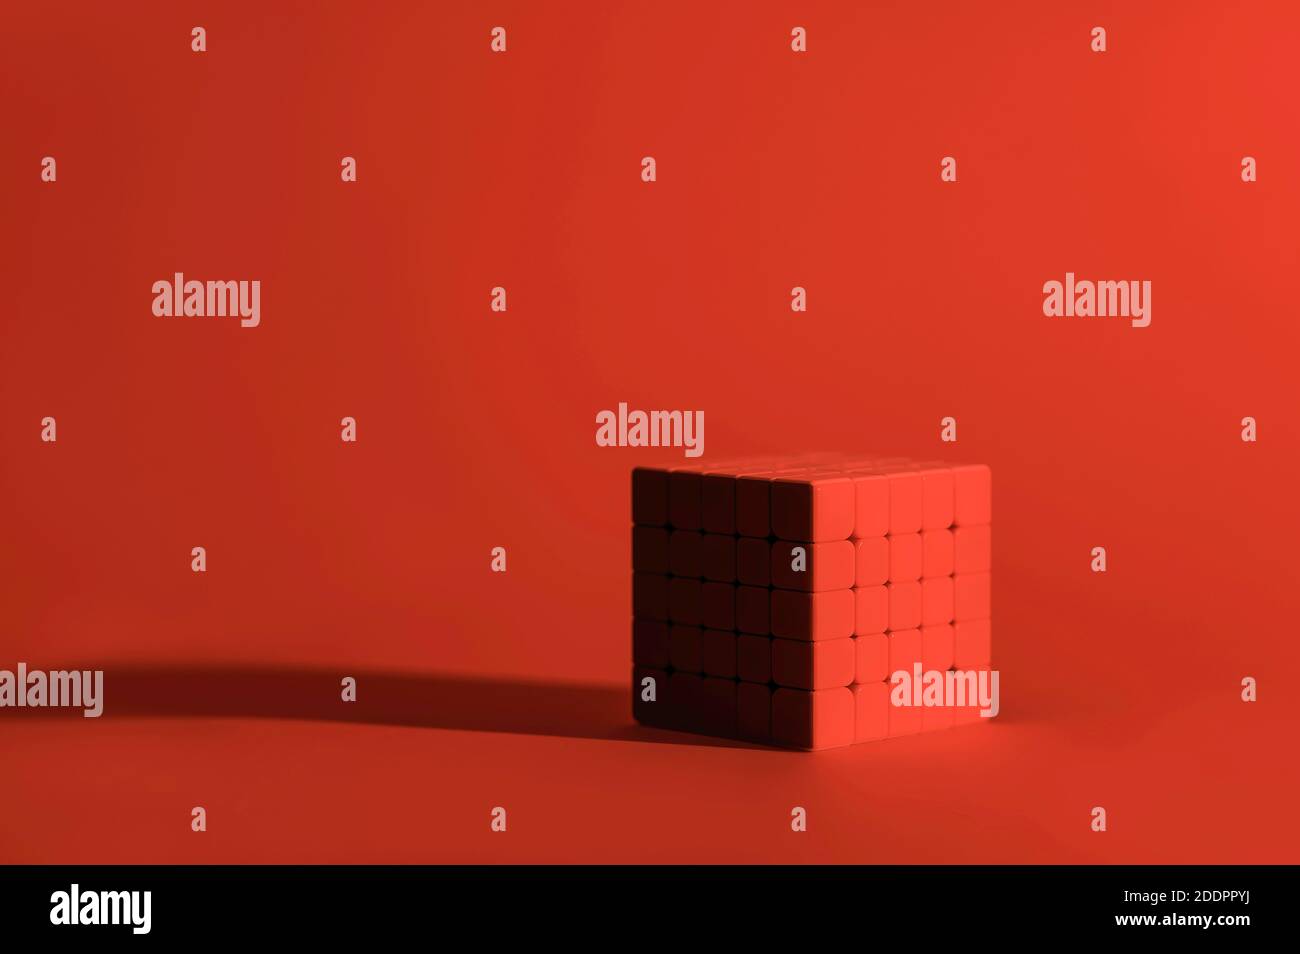 Monocromatico, rosso, cubo di Rubik 5x5 su sfondo rosso, cubo magico, cubo puzzle Foto Stock